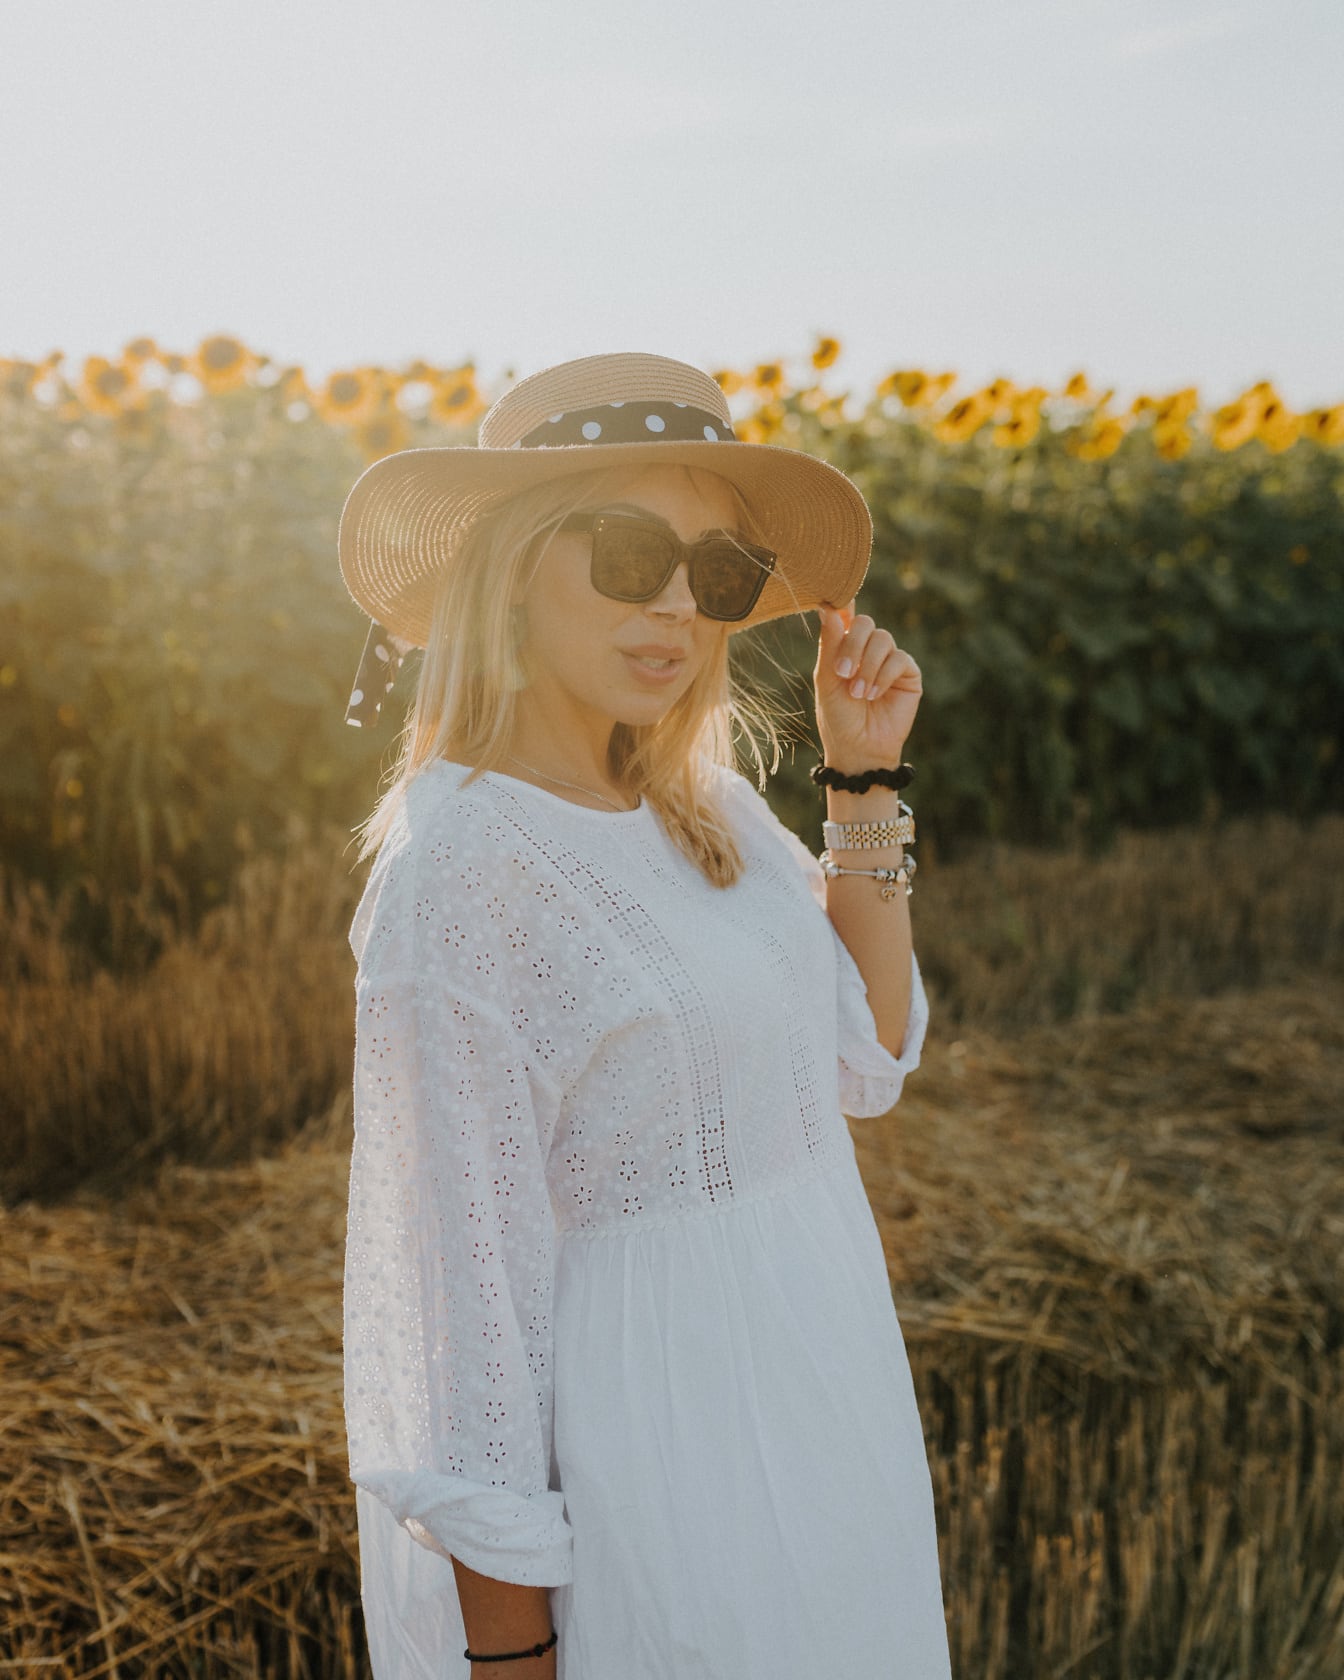 Vidiecka žena v bielych ľudových šatách a klobúku v poli slnečníc za slnečnicového dňa